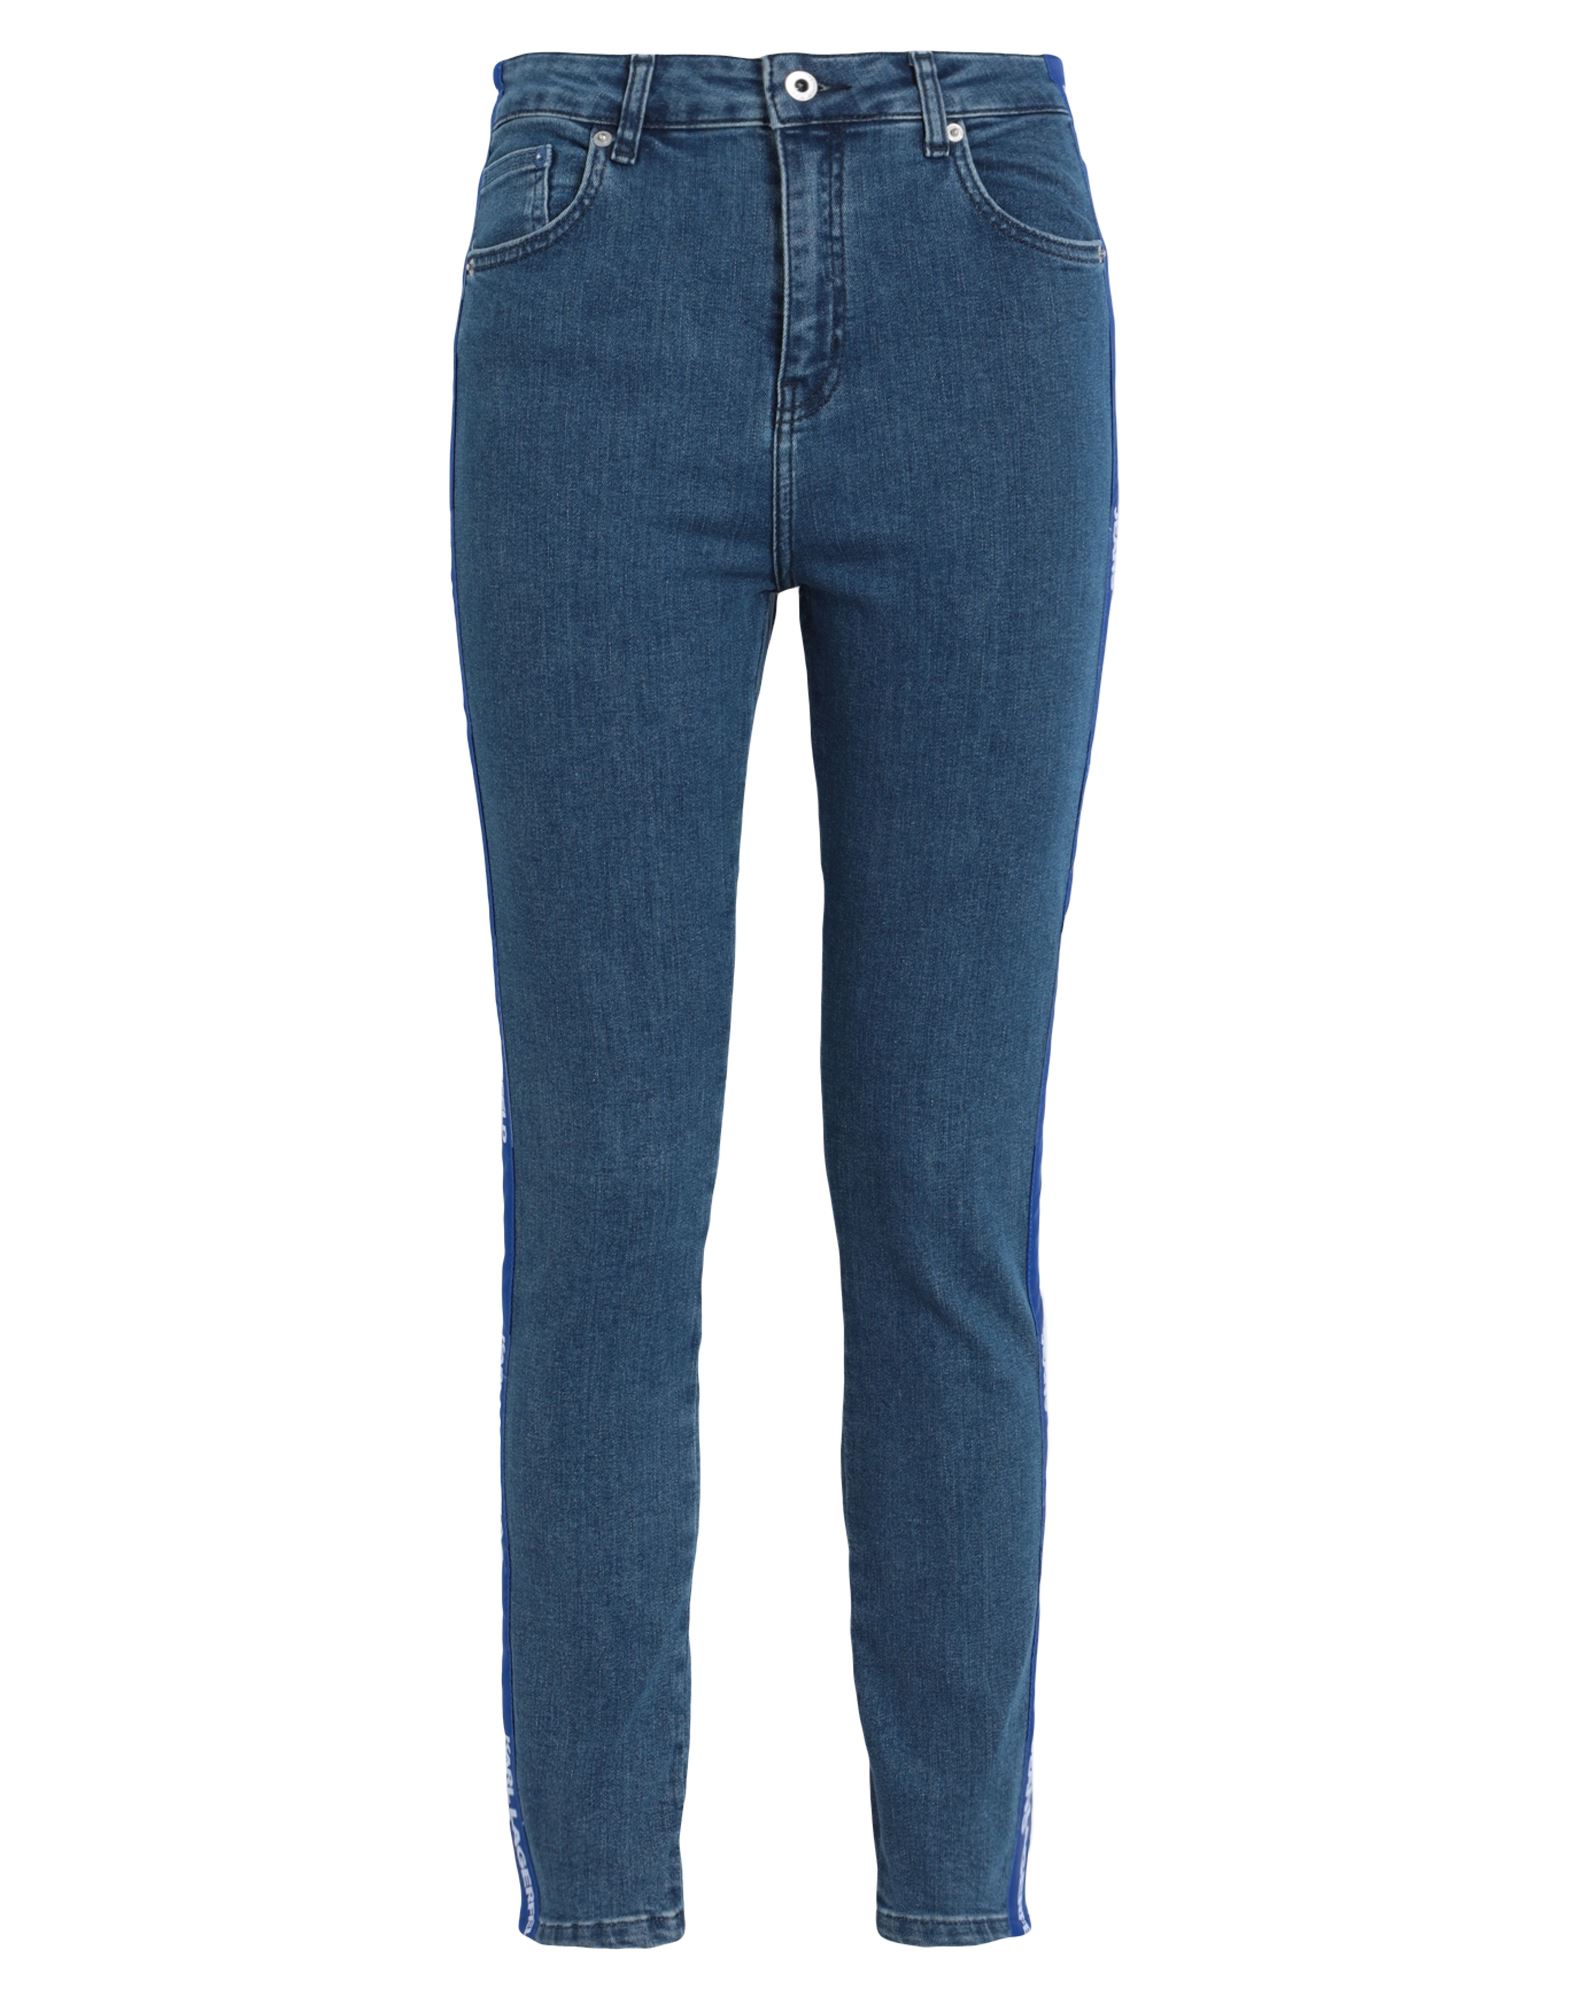 Karl Lagerfeld Jeans Klj Hr Skinny Logo Denim Woman Jeans Blue Size 29w-30l Organic Cotton, Cotton,